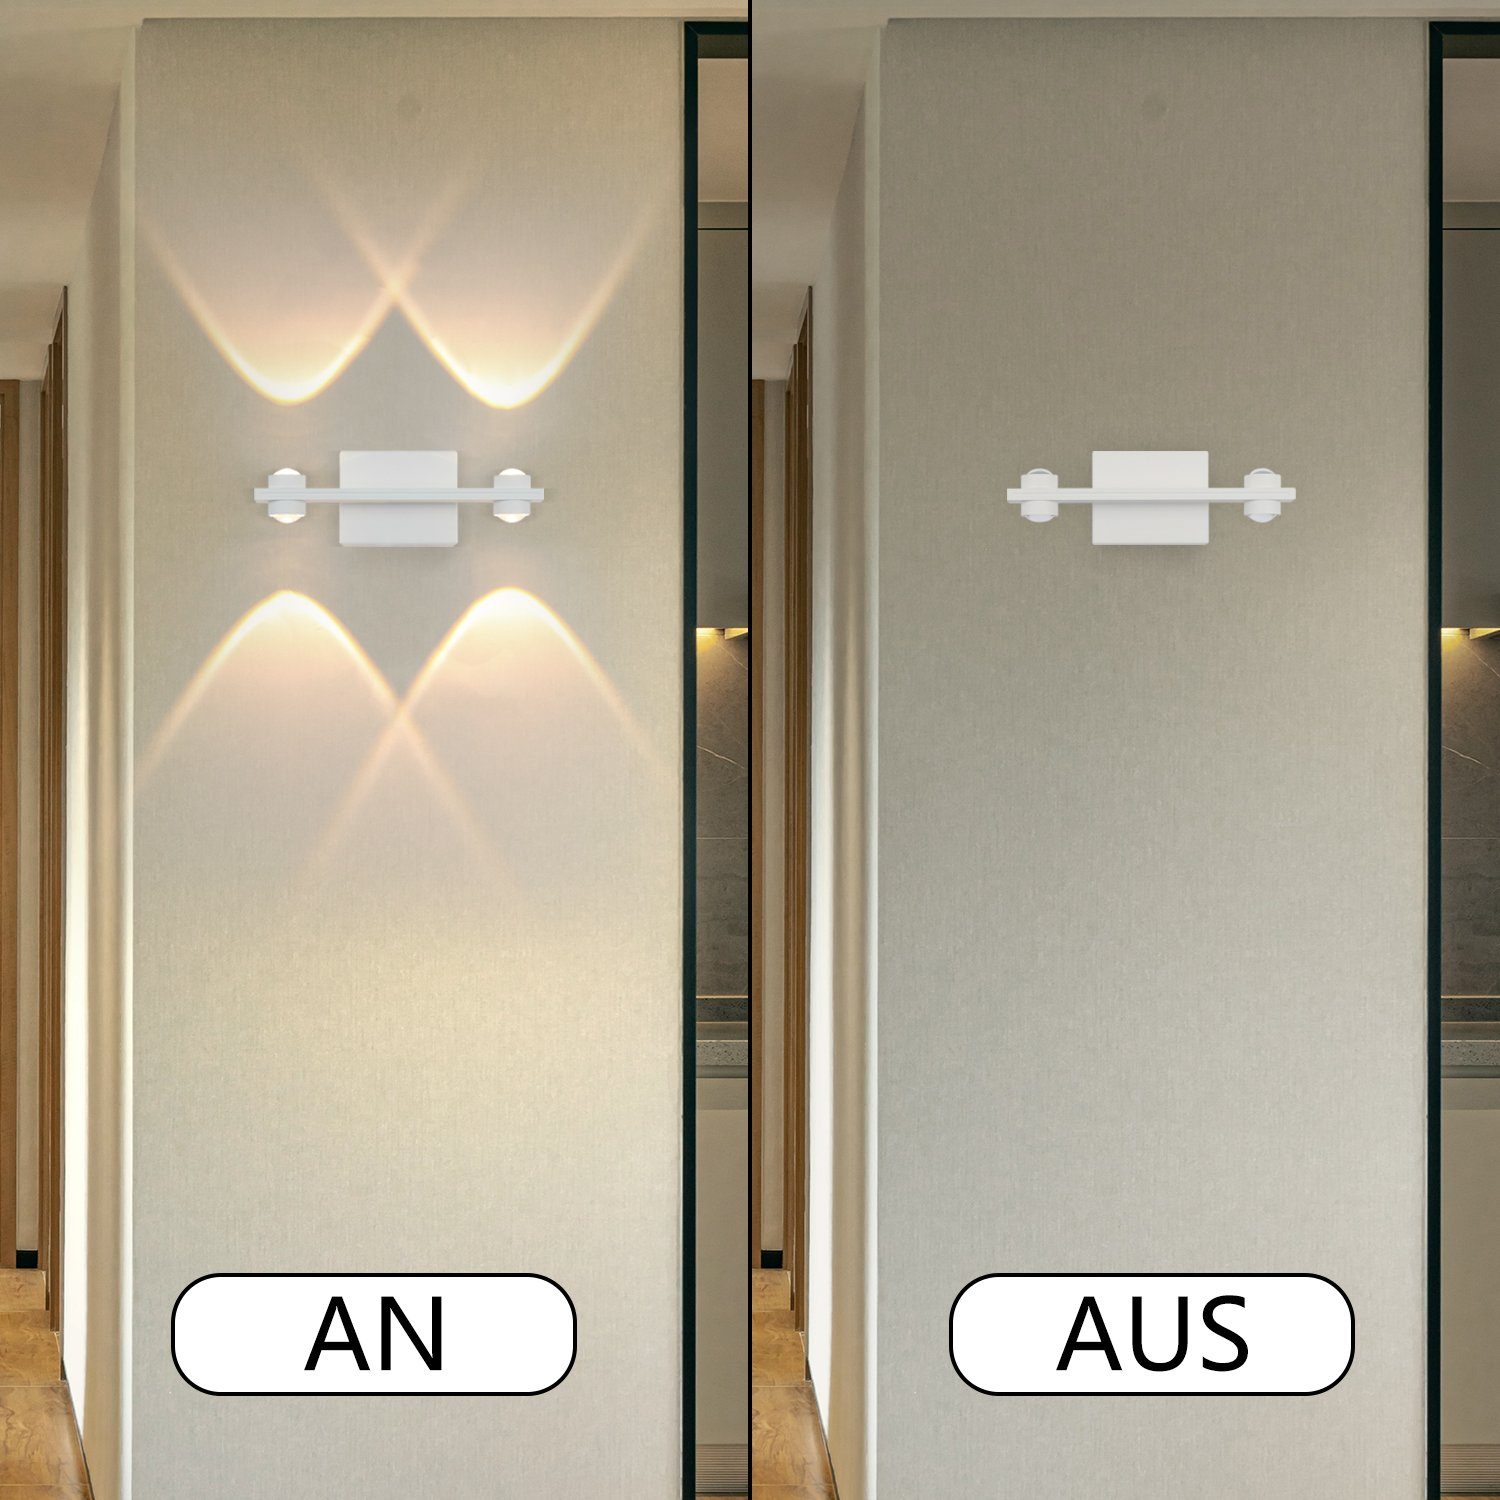 ZMH LED Wandleuchte innen Wohnzimmer Weiß Wandlampe Warmweiss 3000K, Wandbeleuchtung Modern